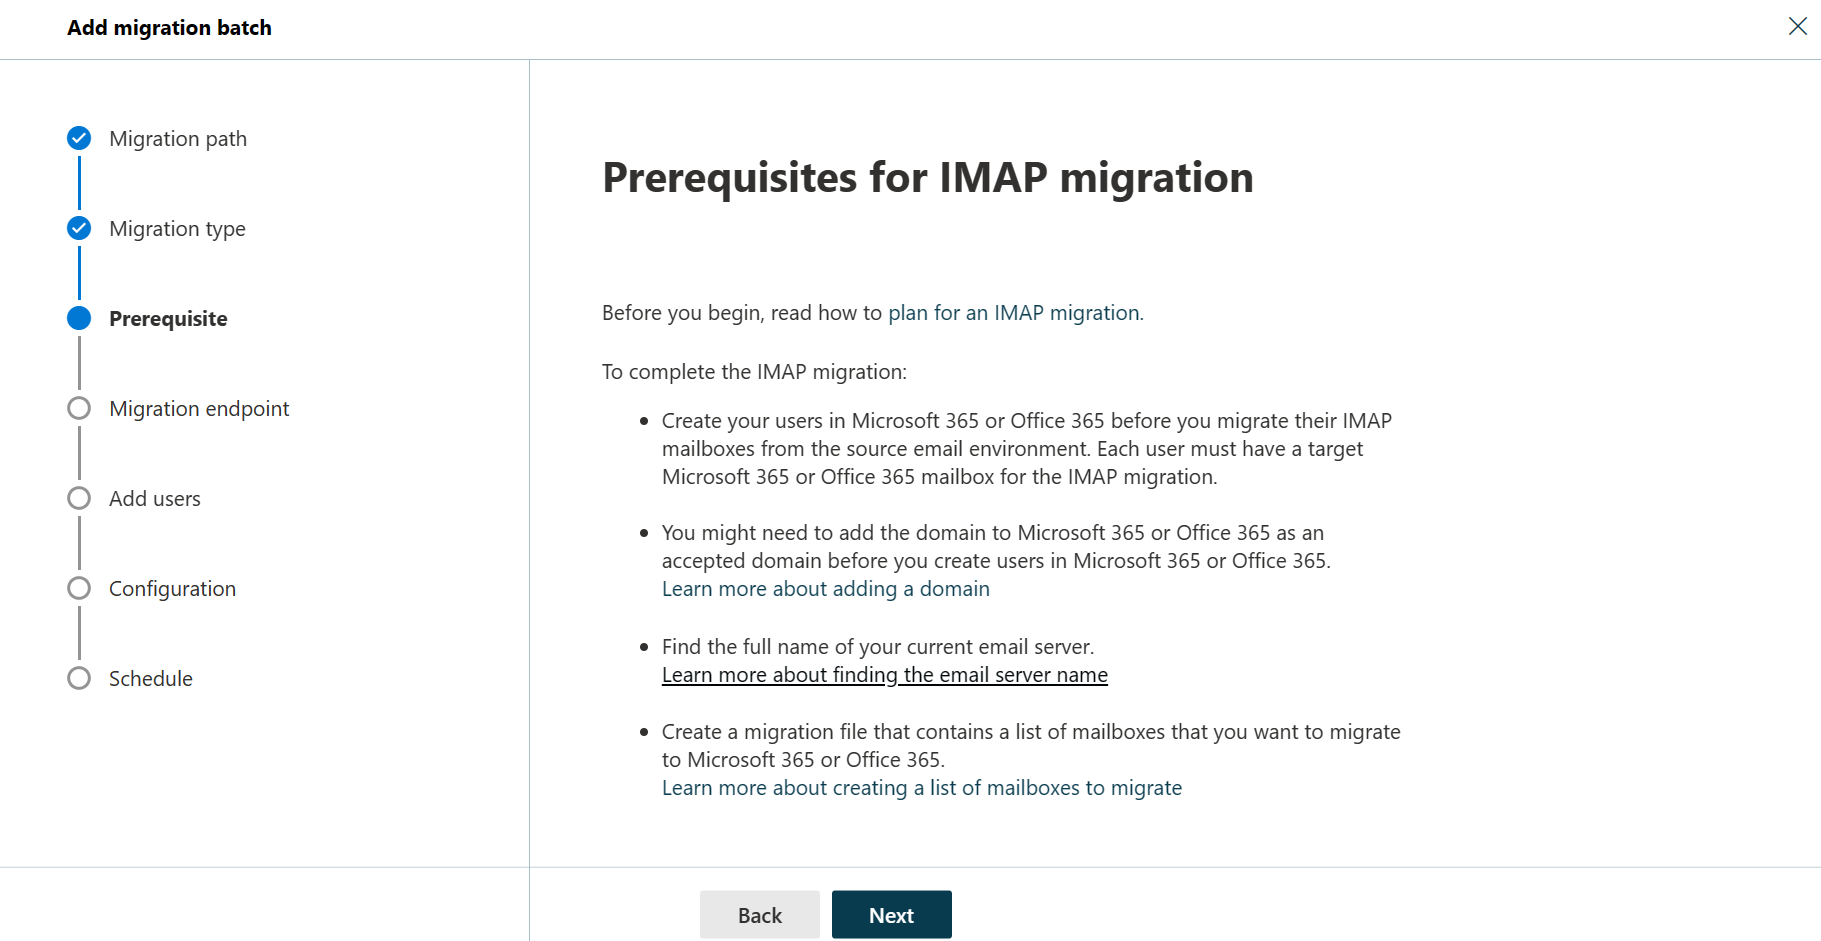 Captura de pantalla del tercer paso del Asistente para migración por lotes en la que se enumeran los requisitos previos para una migración IMAP.